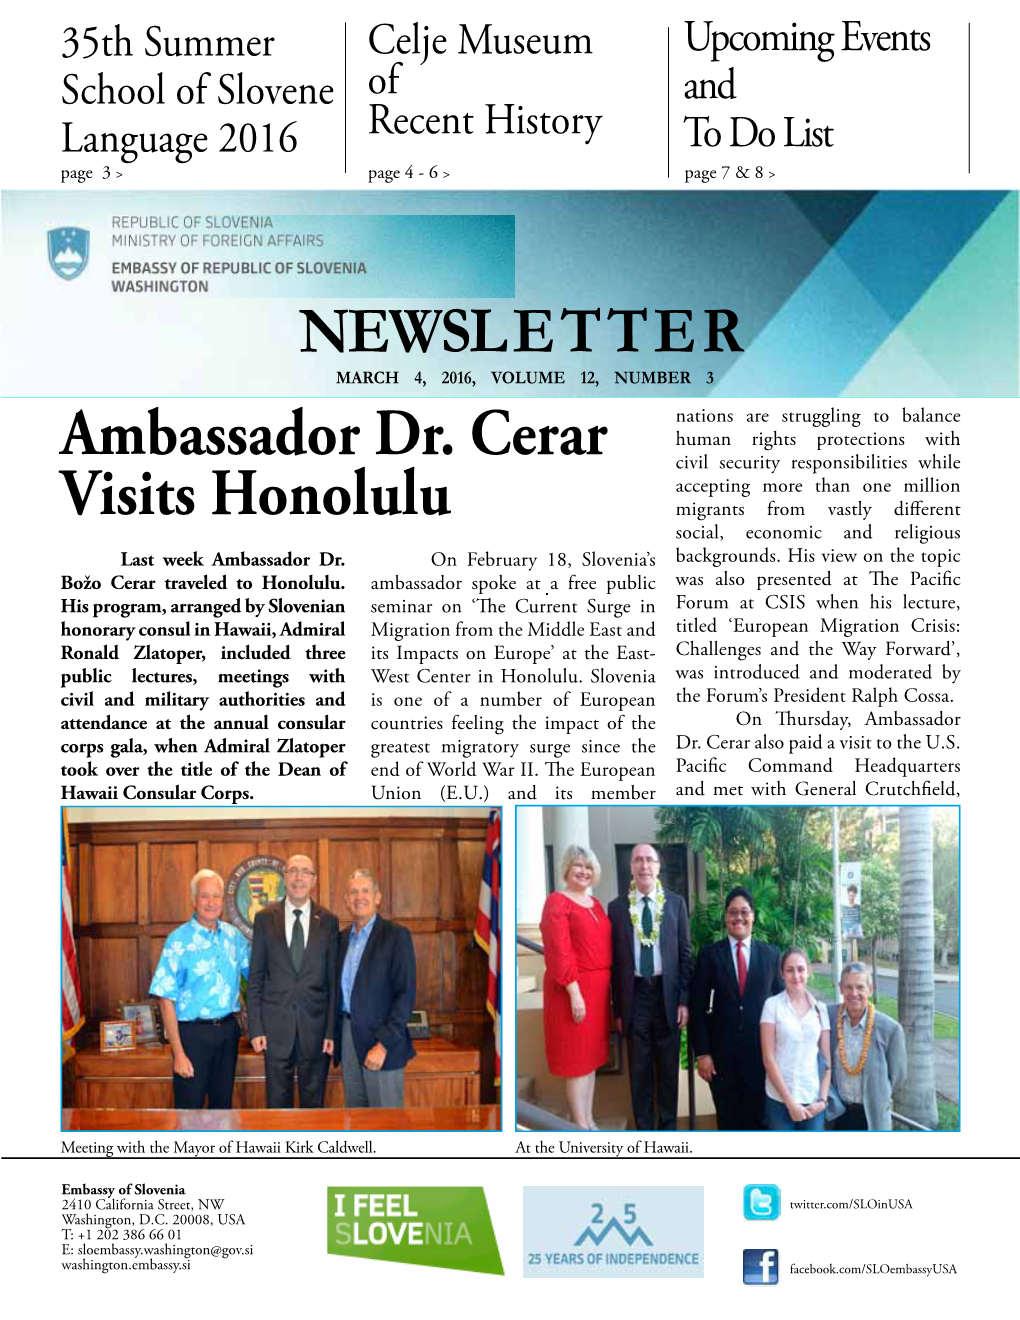 NEWSLETTER Ambassador Dr. Cerar Visits Honolulu